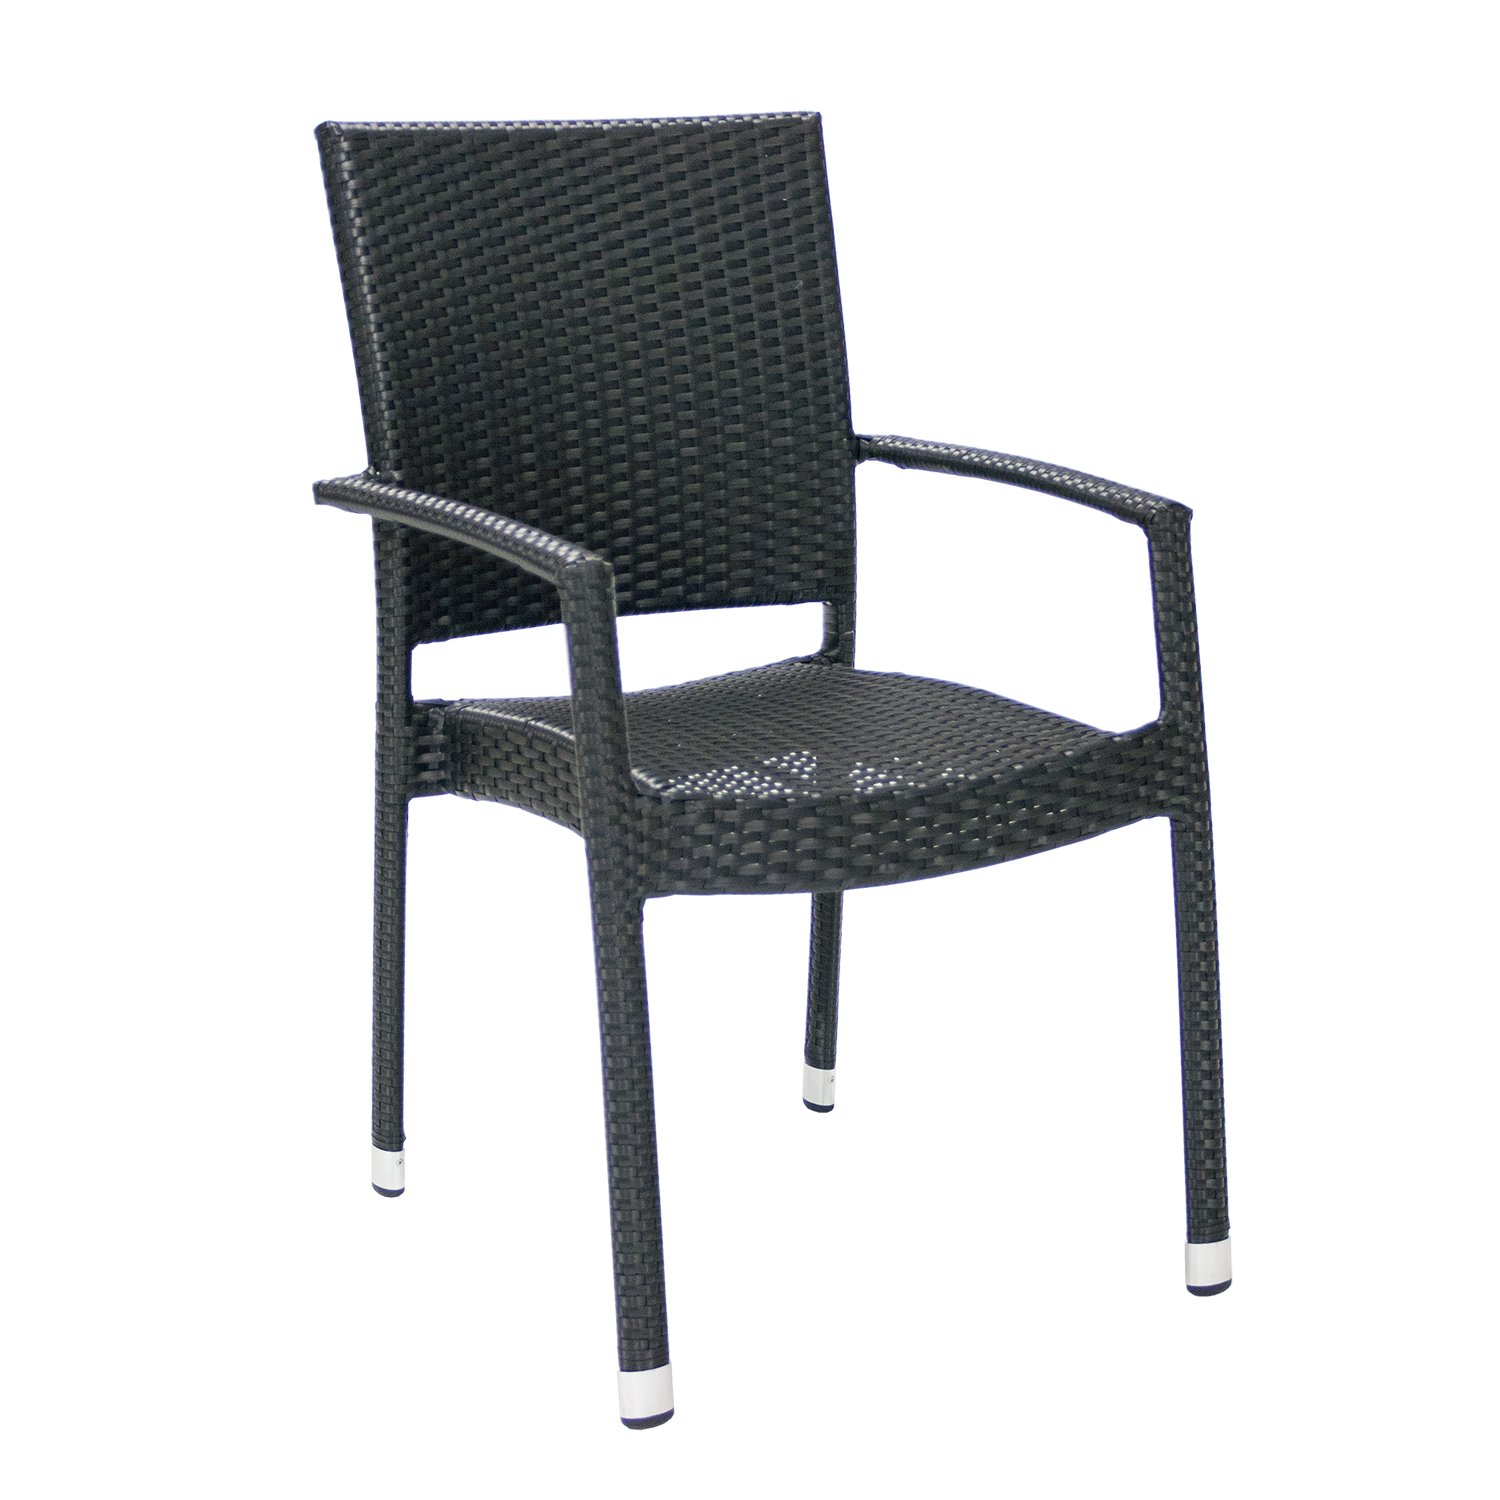 Lauko kėdė WICKER-3, juoda - 1